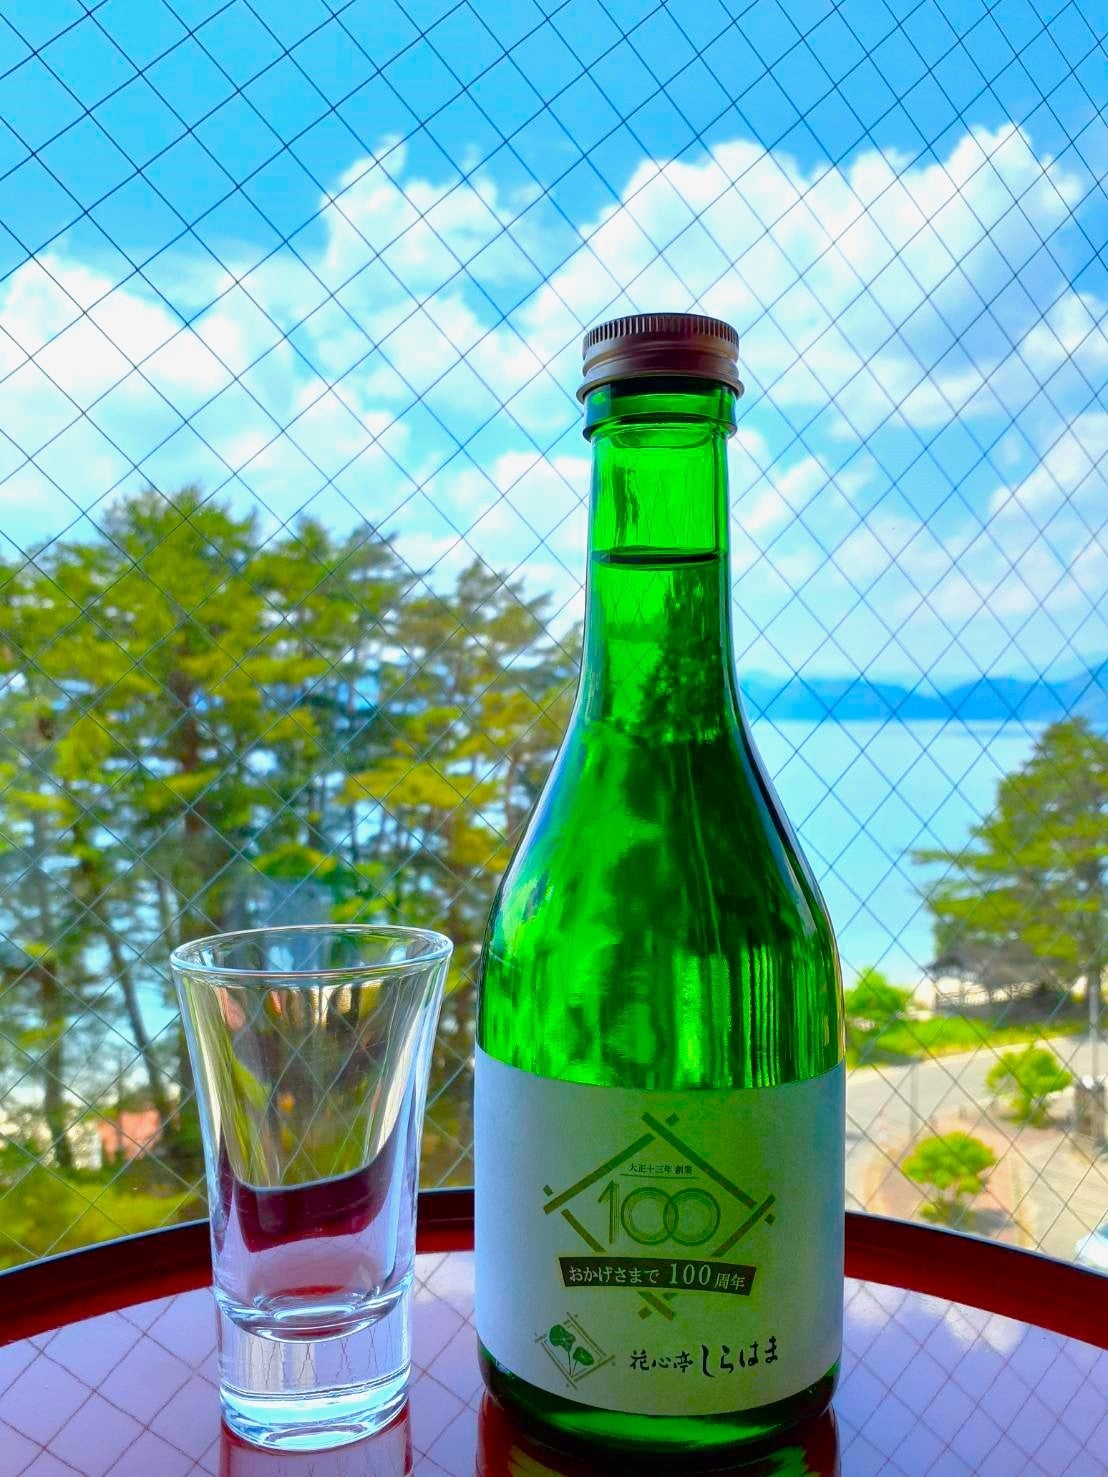 秋田・田沢湖畔「花心亭しらはま」が創業100周年。100年前の酵母使用した秋田の酒など数量限定提供